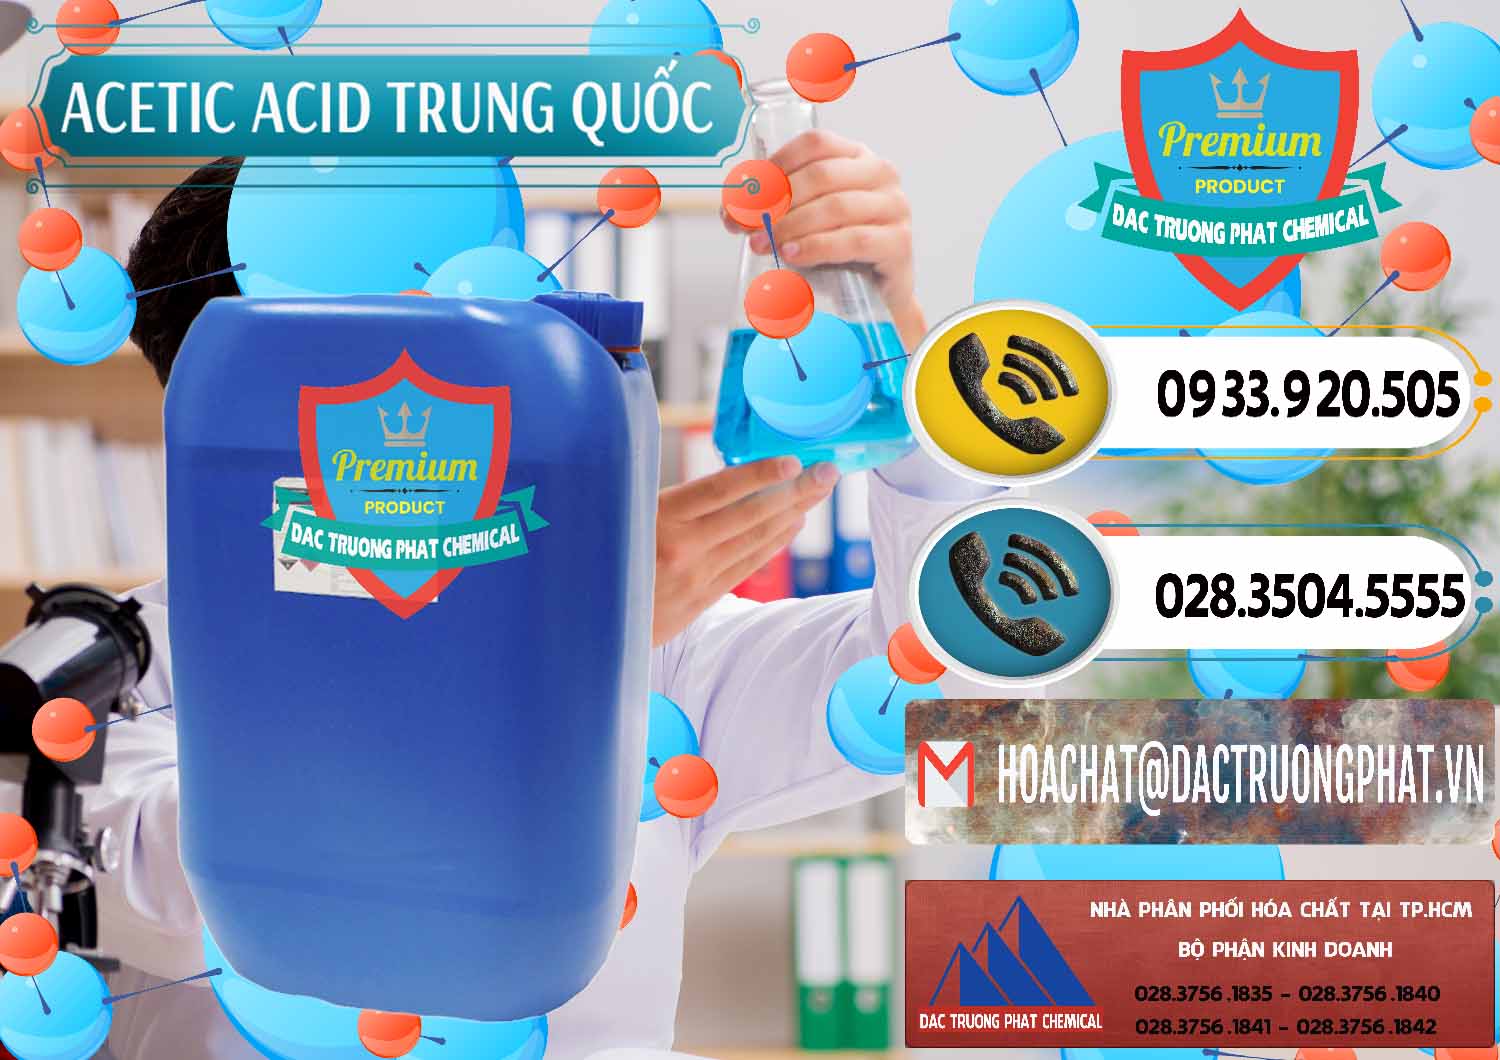 Đơn vị chuyên cung ứng - bán Acetic Acid – Axit Acetic Trung Quốc China - 0358 - Phân phối & cung cấp hóa chất tại TP.HCM - hoachatdetnhuom.vn